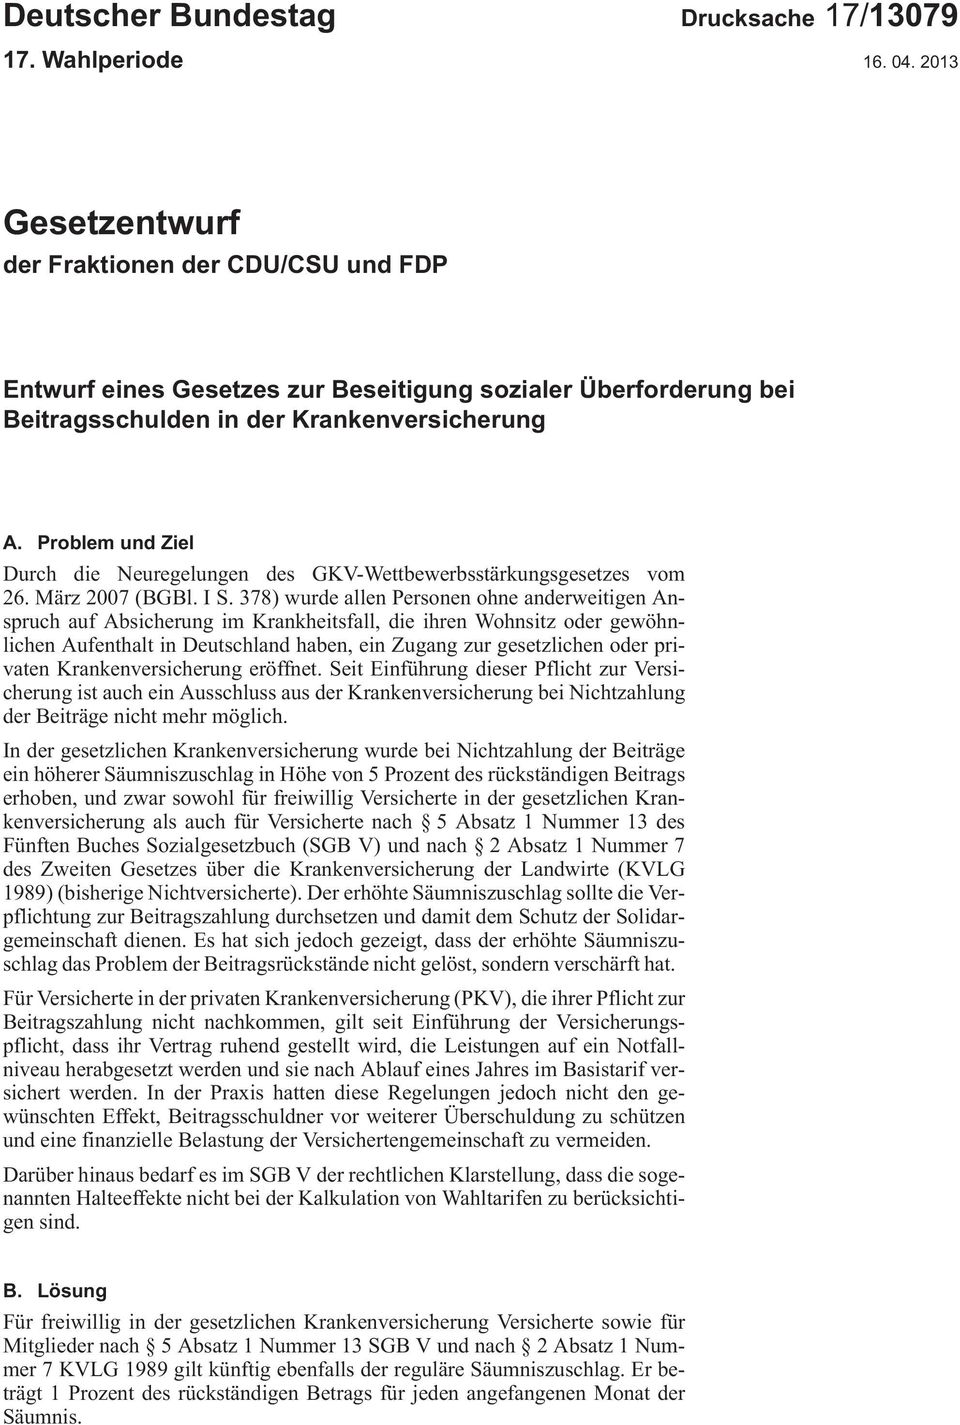 Problem und Ziel DurchdieNeuregelungendesGKV-Wettbewerbsstärkungsgesetzesvom 26.März2007 (BGBl.IS.